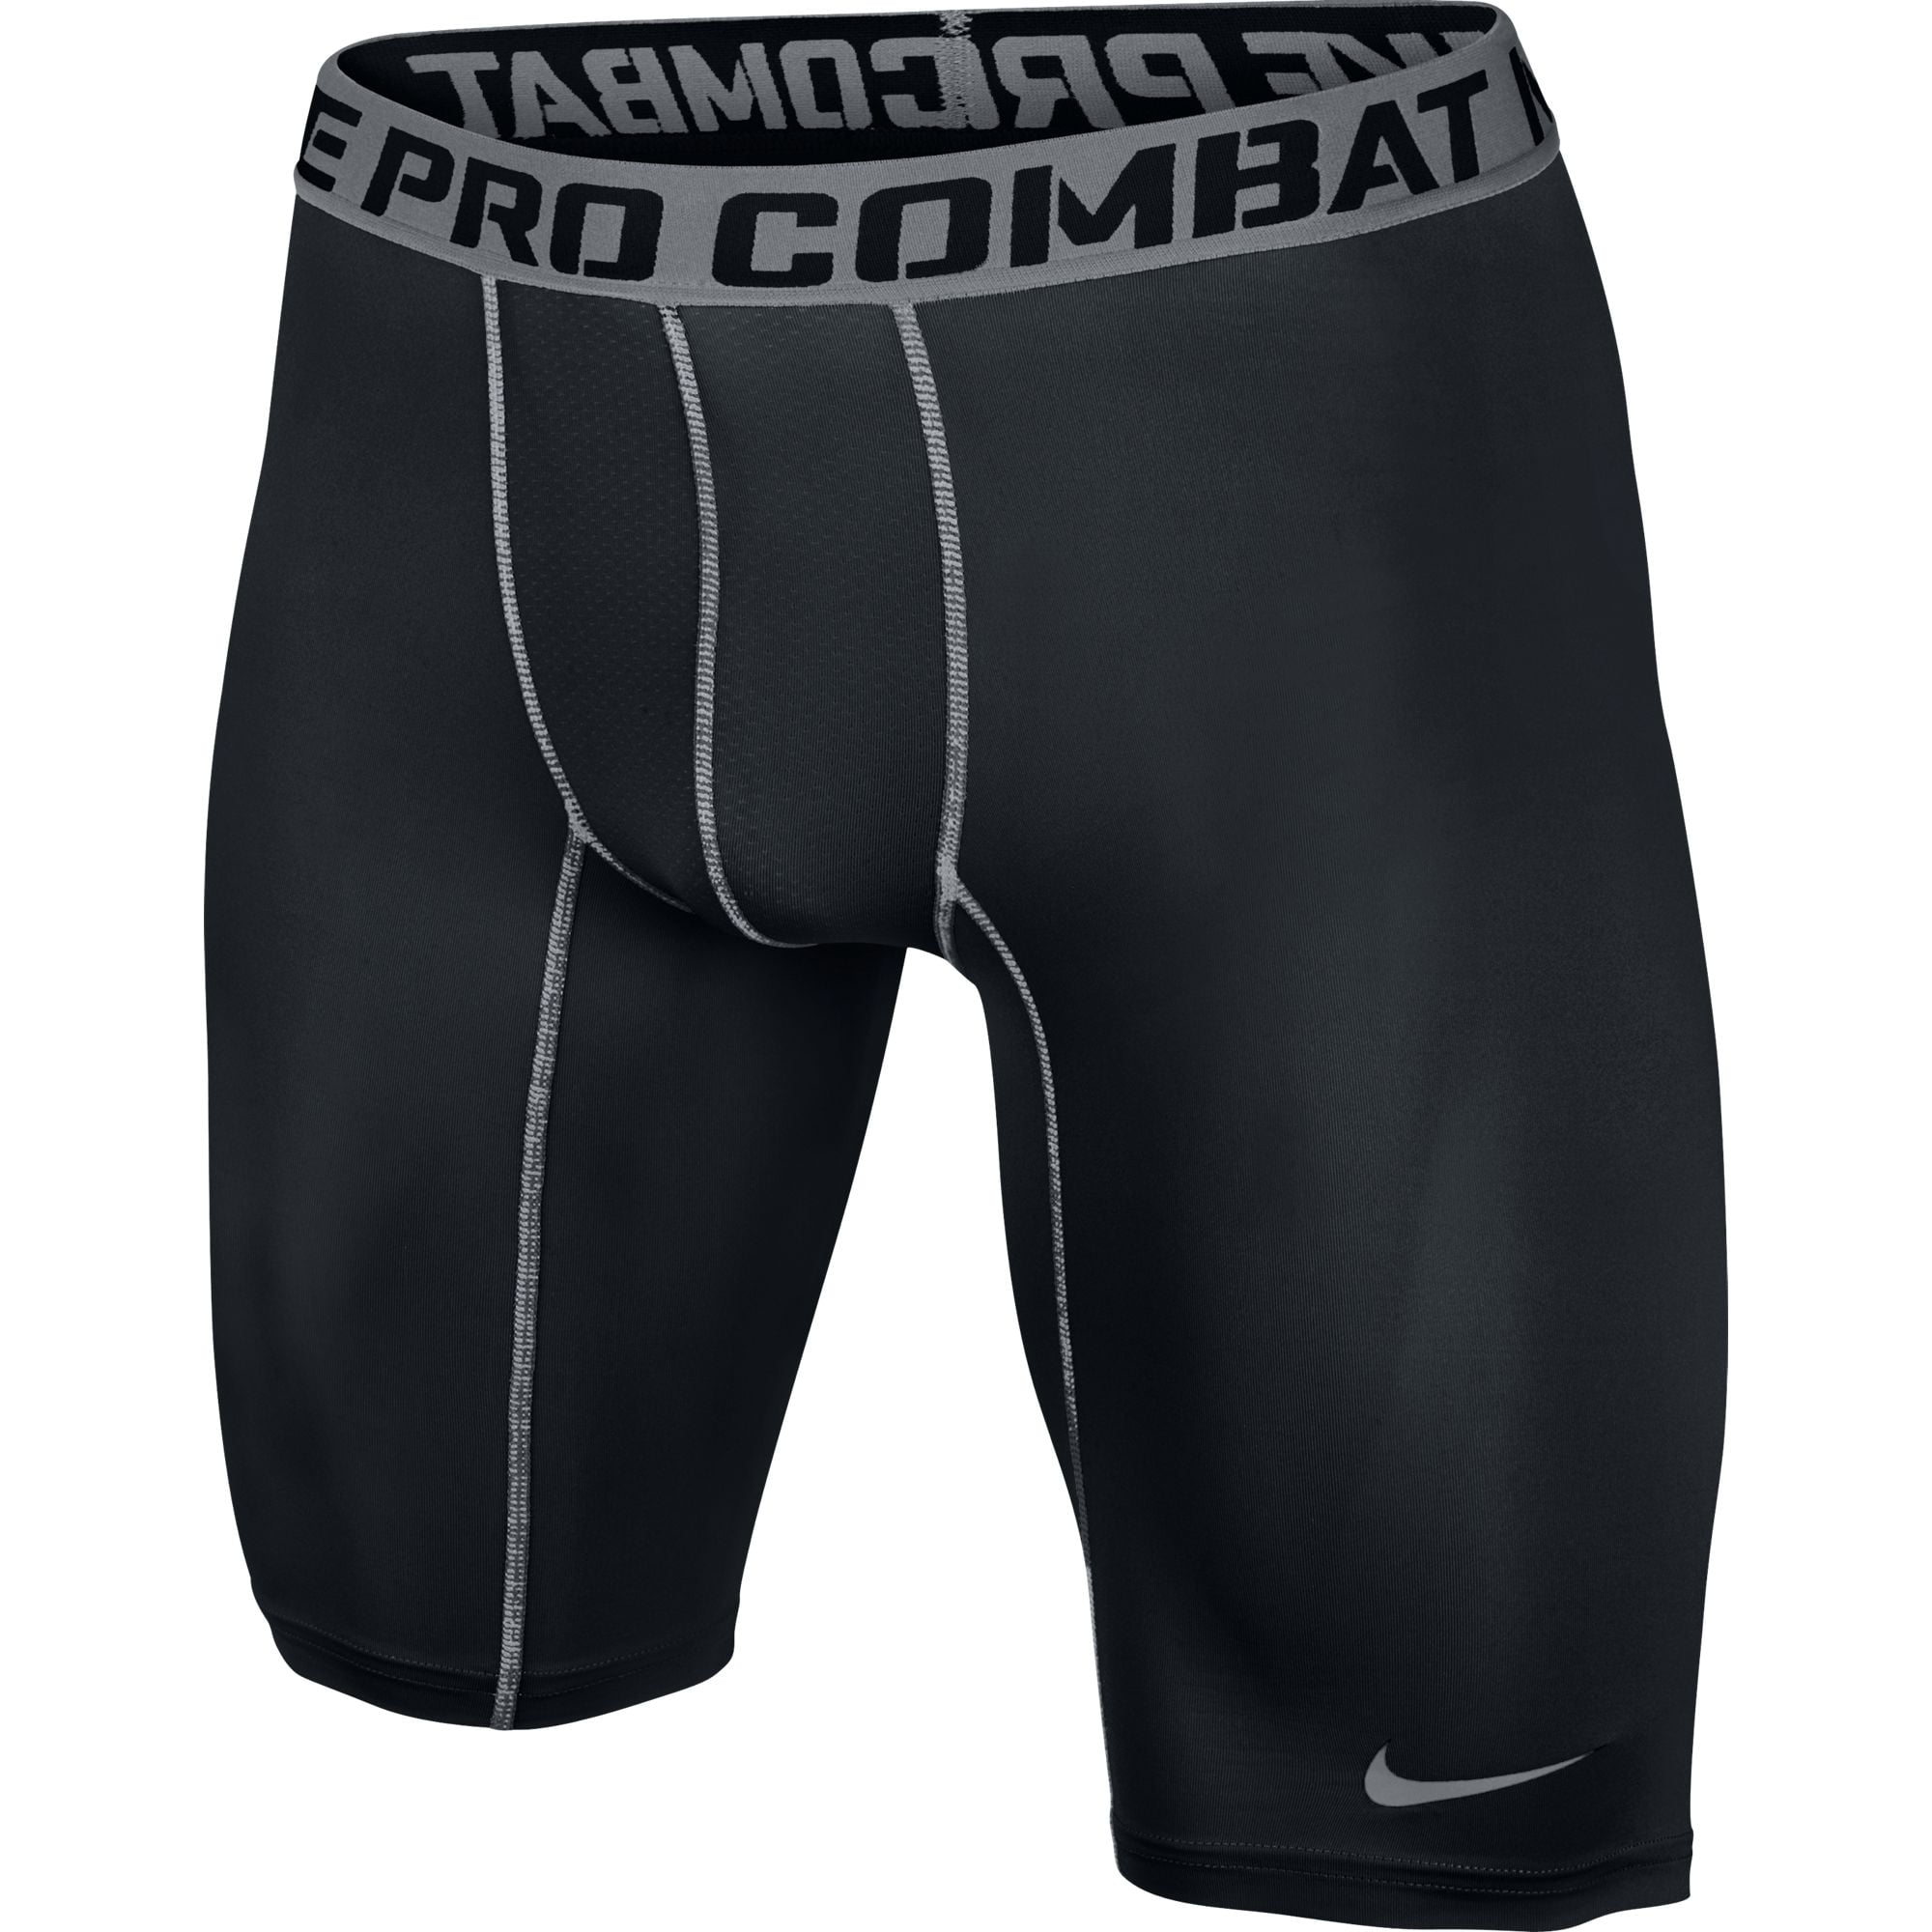 es bonito Ejercicio mañanero Infantil Men's Nike Pro Combat Core Compression 2.0 9" Shorts Black/Cool Grey -  Walmart.com